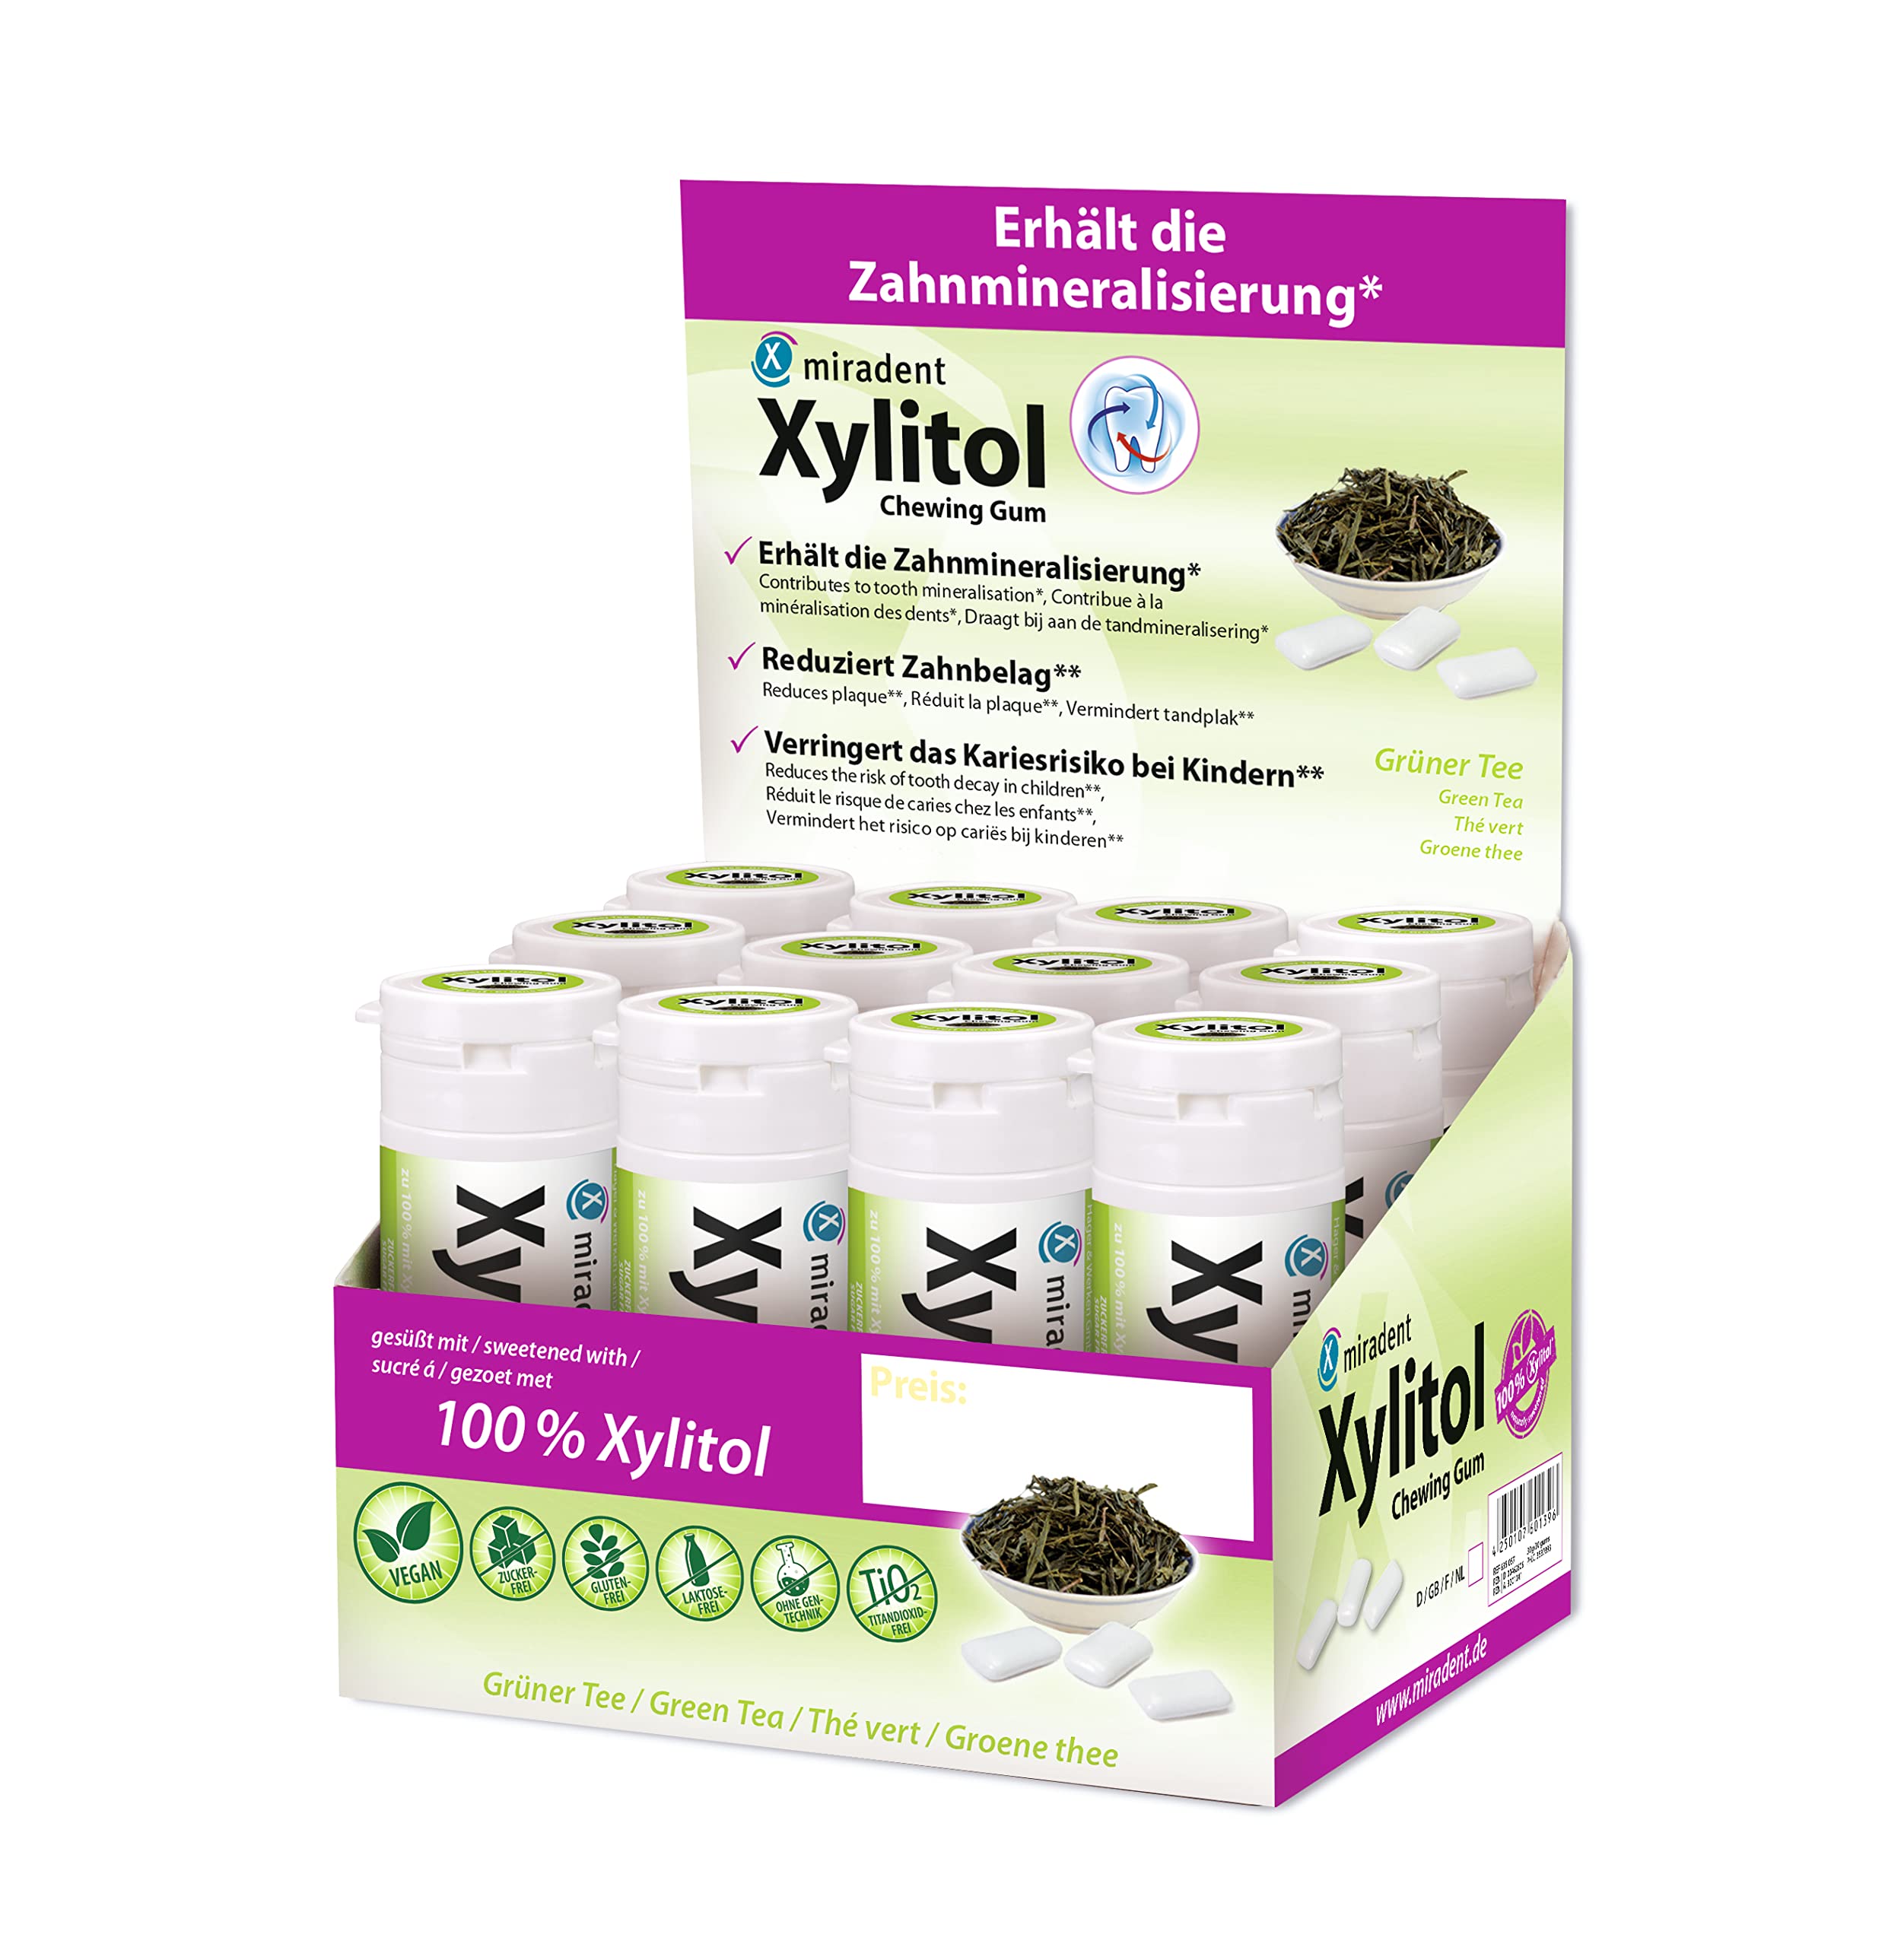 miradent Xylitol Zahnpflegekaugummi Grüner Tee Display 12 St. | erfrischender Geschmack | zuckerfrei | vegan | kariespräventiv | ohne Aspartam, Sorbitol, Laktose, Titanium Dioxid | für unterwegs